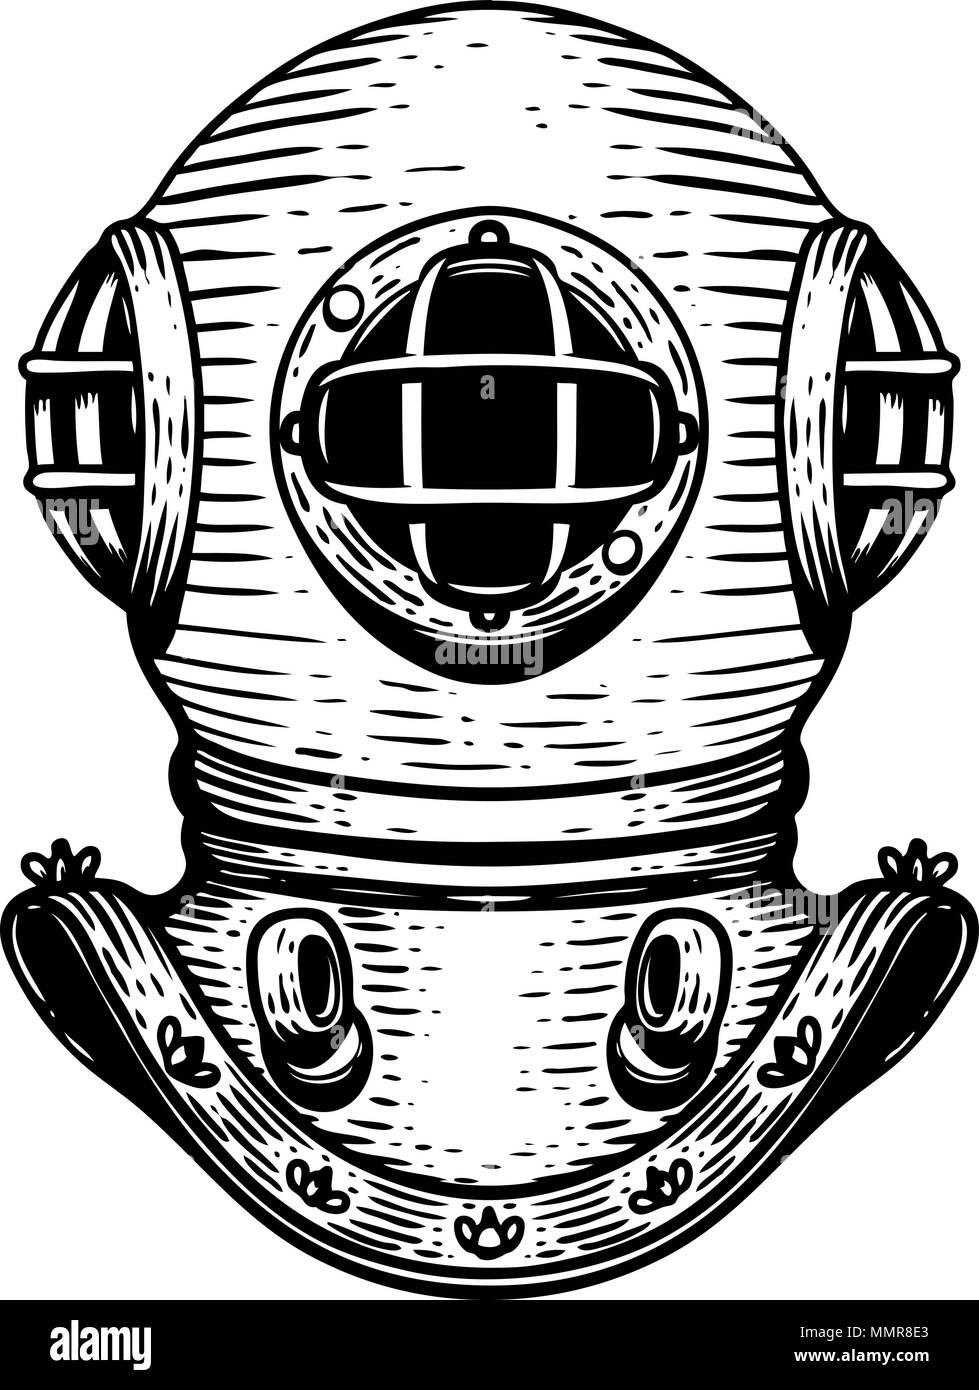 Hand Retro Stil diver Helm Bild auf weißem Hintergrund dargestellt. Designelemente für Logo, Label, Emblem, Zeichen, Abzeichen. Vektorbild Stock Vektor